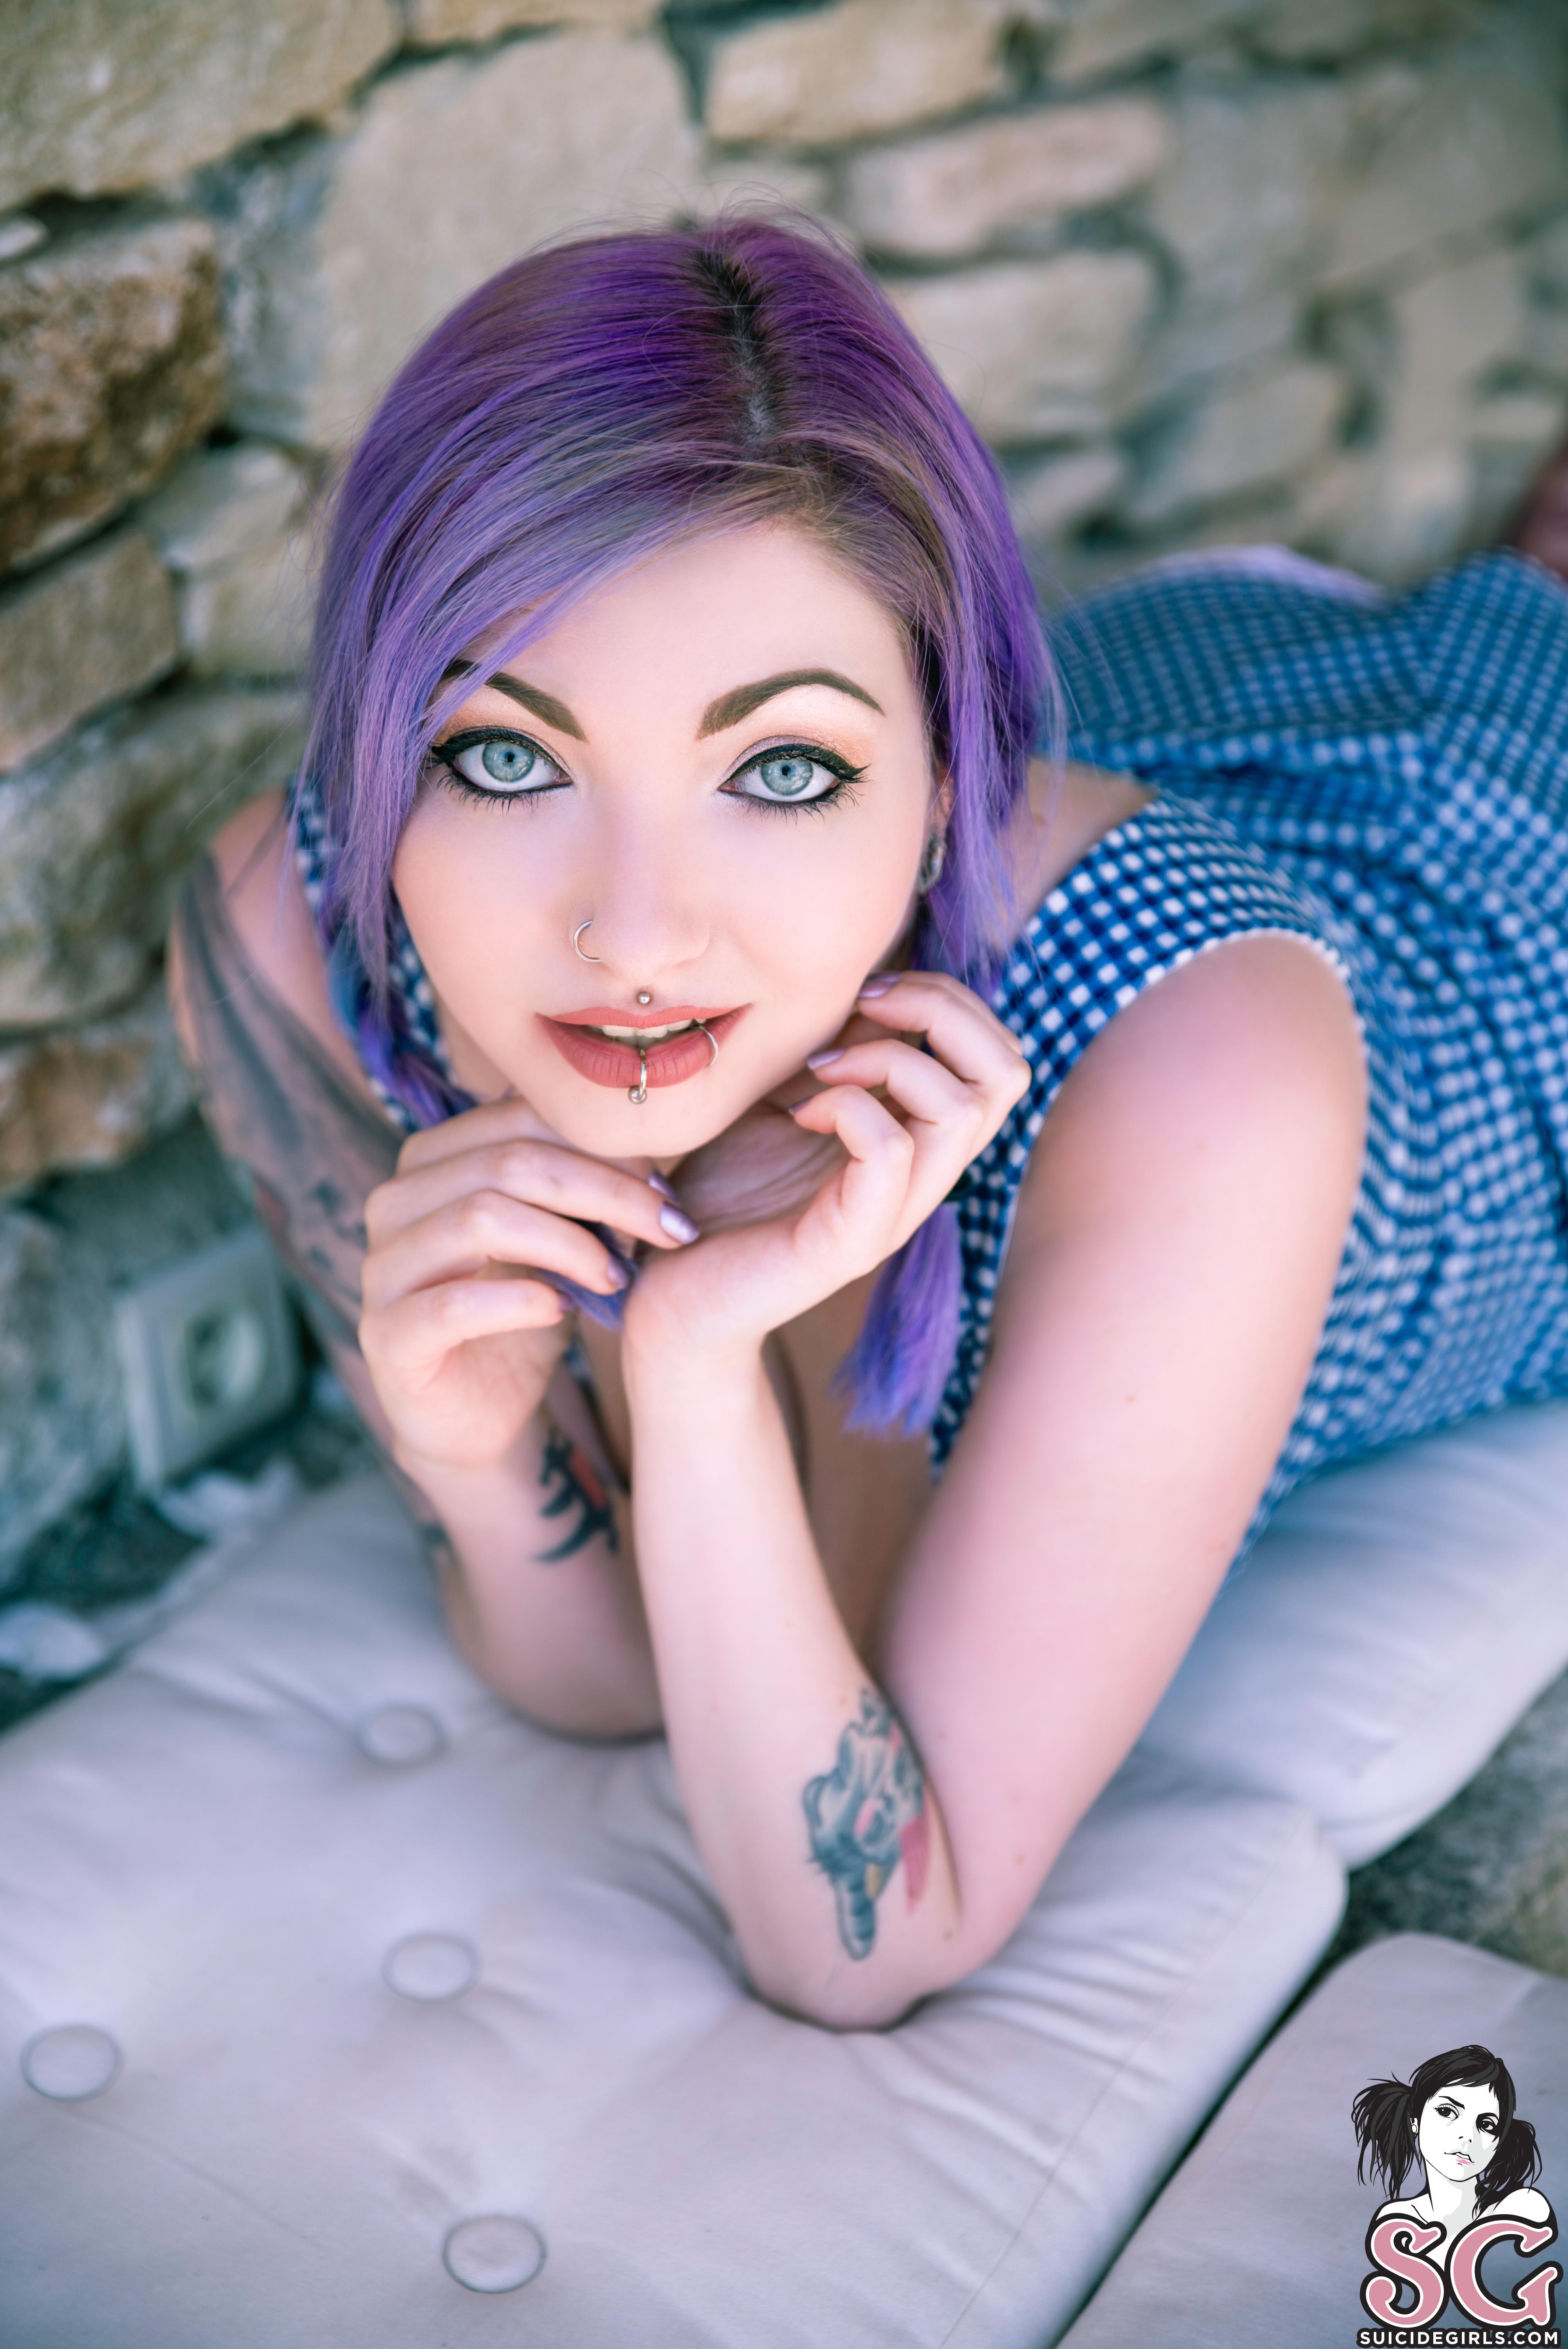 Women Brunette Piercing Dress Inked Girls Chubby Purple Hair Blue Eyes 4016x6016